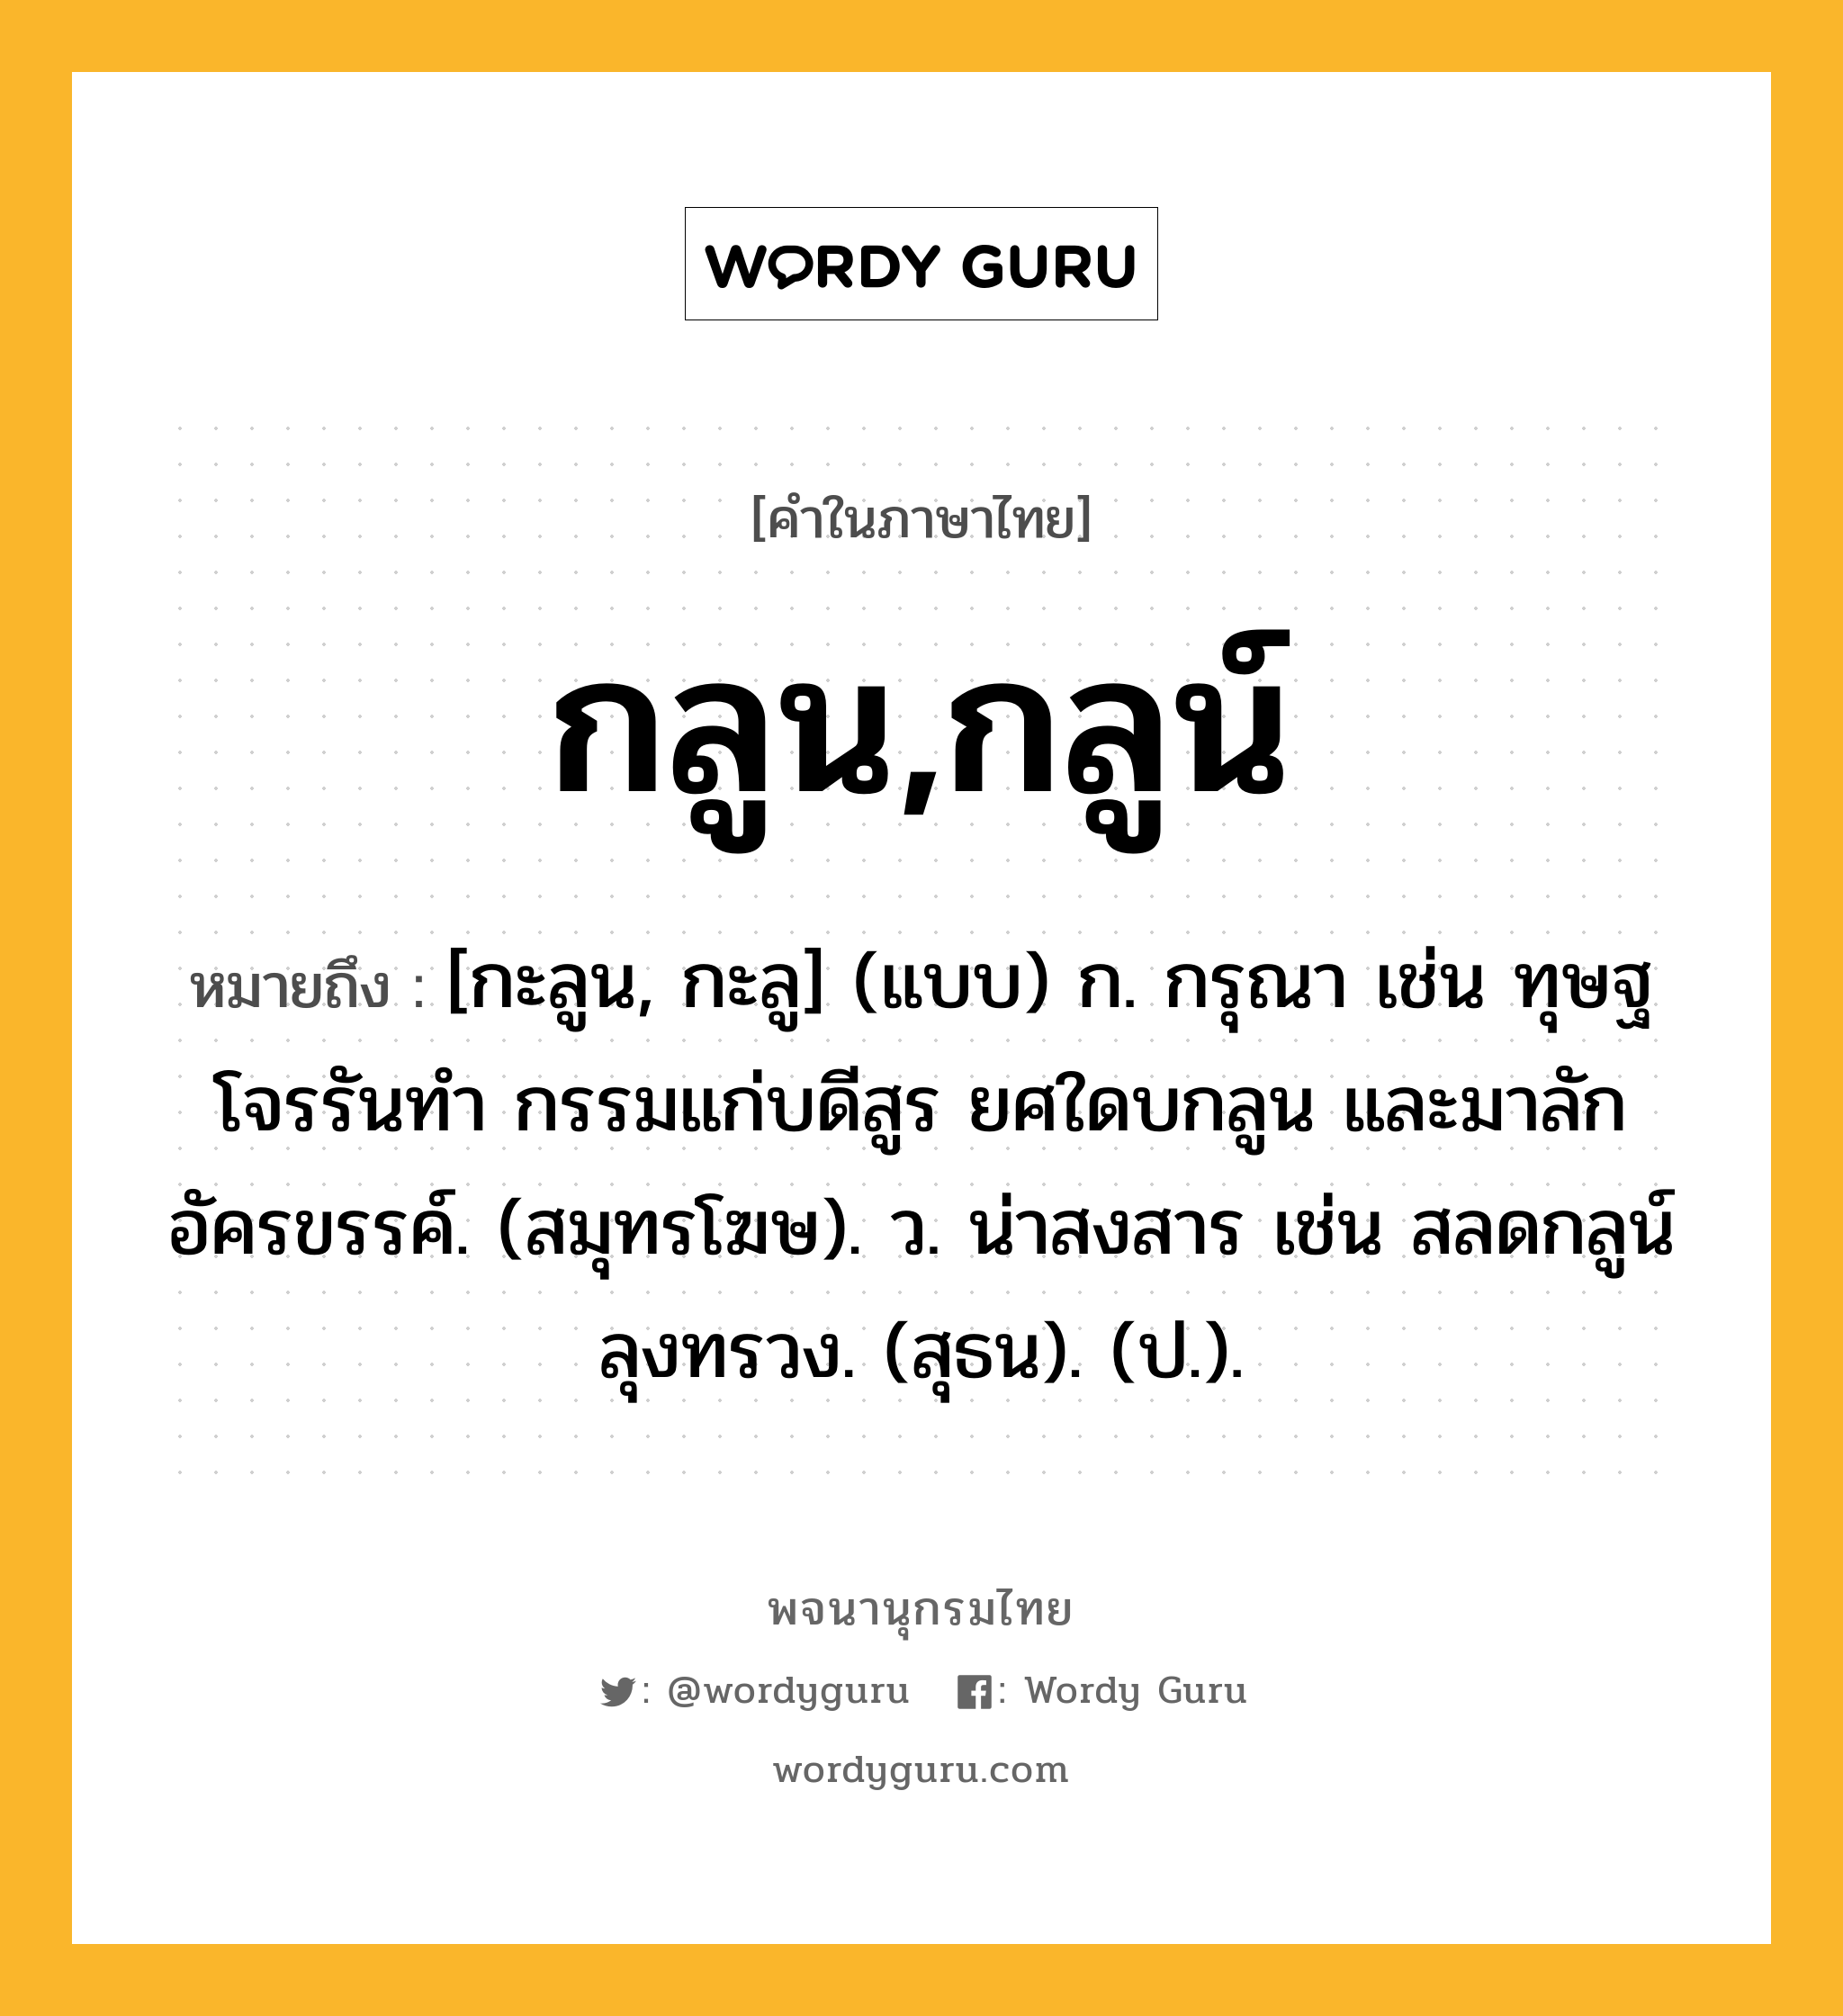 กลูน,กลูน์ ความหมาย หมายถึงอะไร?, คำในภาษาไทย กลูน,กลูน์ หมายถึง [กะลูน, กะลู] (แบบ) ก. กรุณา เช่น ทุษฐโจรรันทำ กรรมแก่บดีสูร ยศใดบกลูน และมาลักอัครขรรค์. (สมุทรโฆษ). ว. น่าสงสาร เช่น สลดกลูน์ลุงทรวง. (สุธน). (ป.).